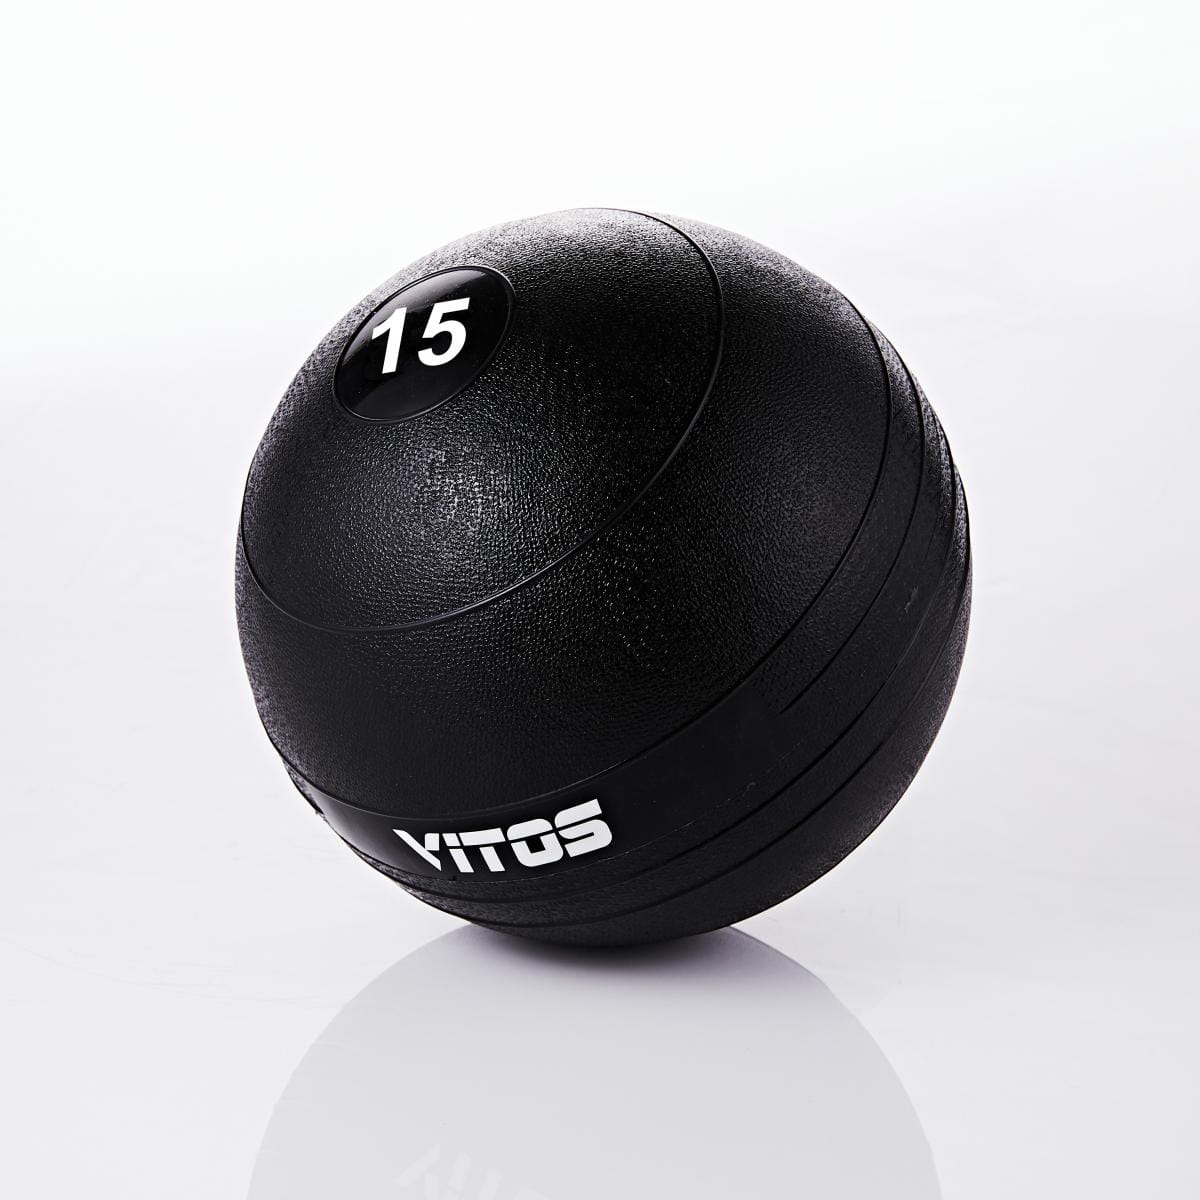 【Vitos】VITOS 重力球 15磅 7公斤 0